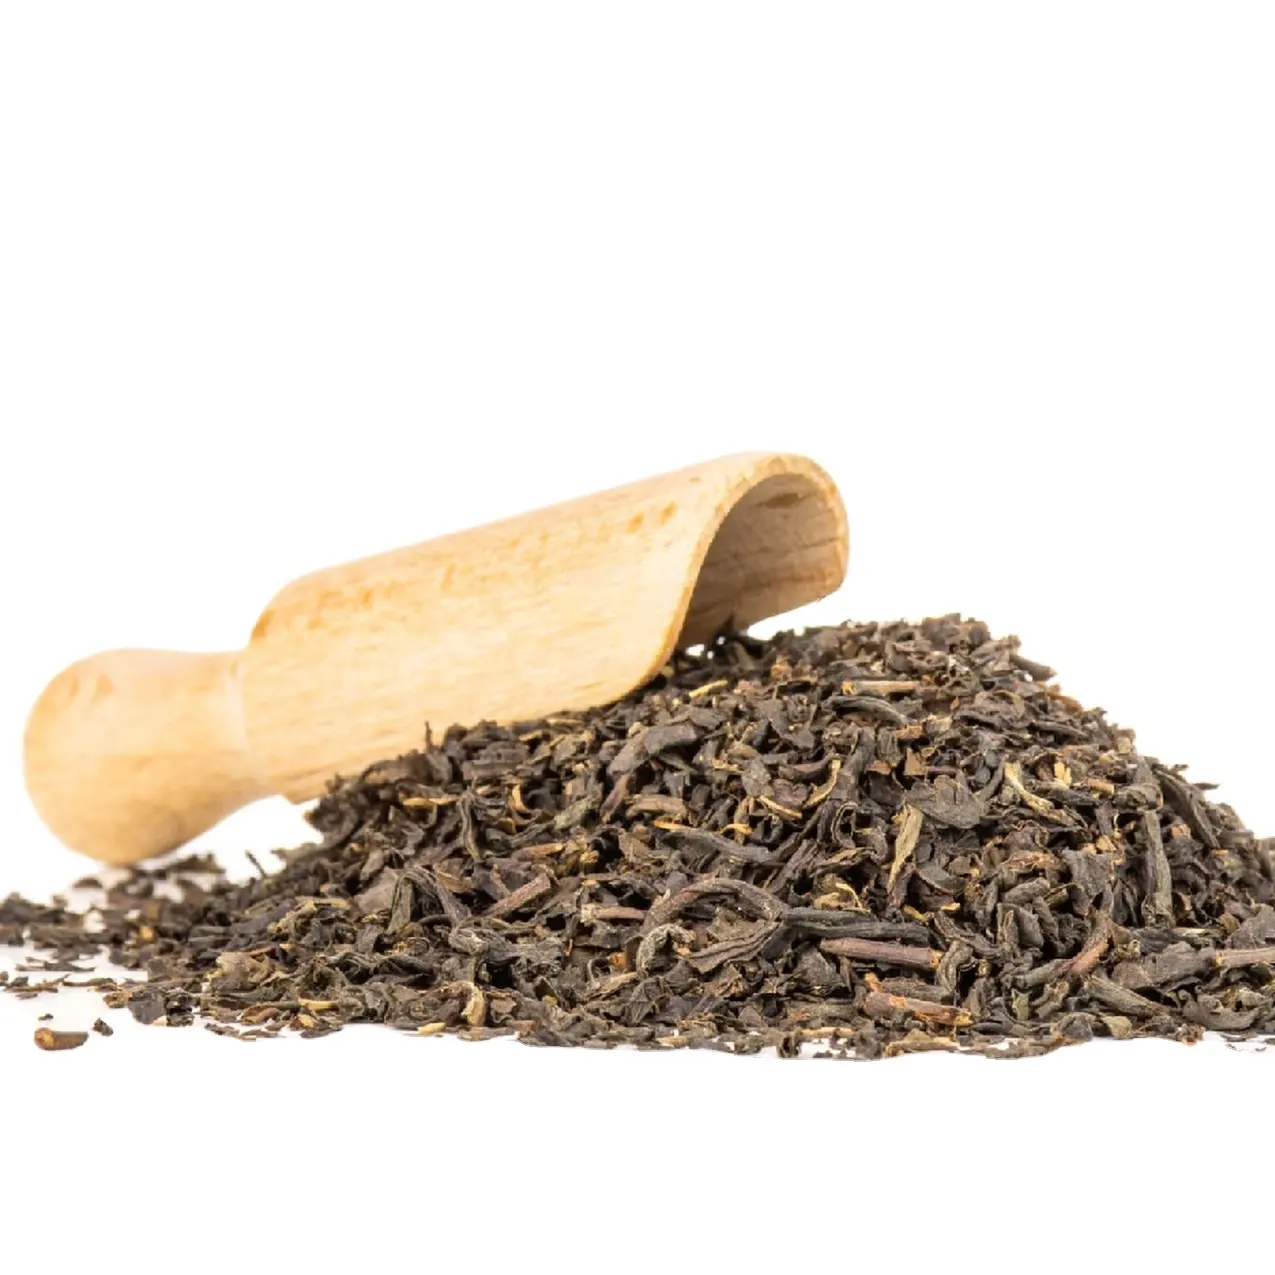 Высококачественный черный чай Assam, полезный напиток для всех возрастных групп, хорошее качество и энергетический усилитель, оптовая цена